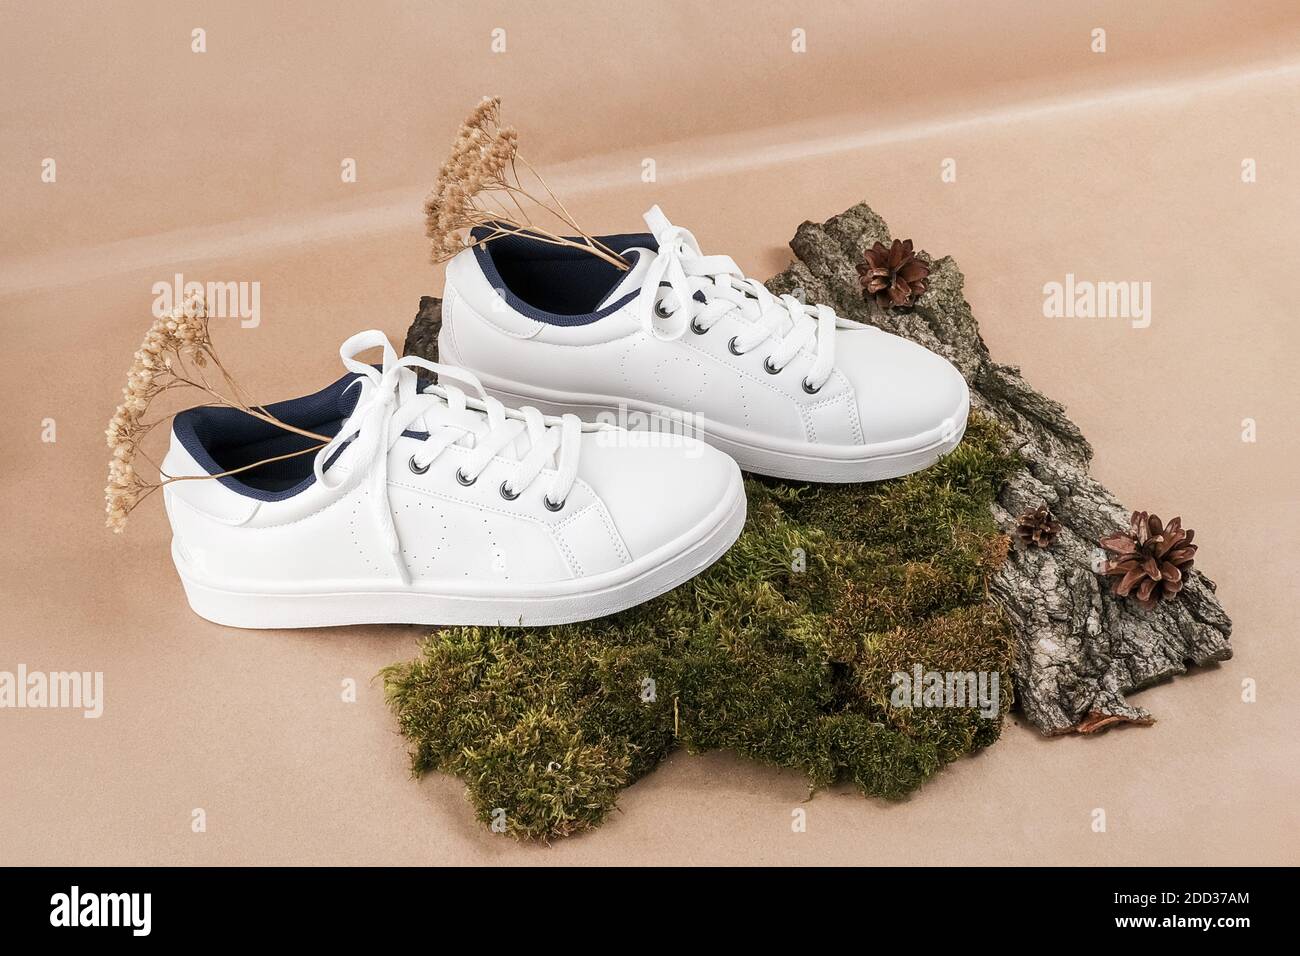 Ethisches veganes Schuhkonzept. Ein Paar weiße Sneakers mit trockenen Blumen  auf Baumrinde und Moos, neutral beige Bastelpapier Hintergrund  Stockfotografie - Alamy